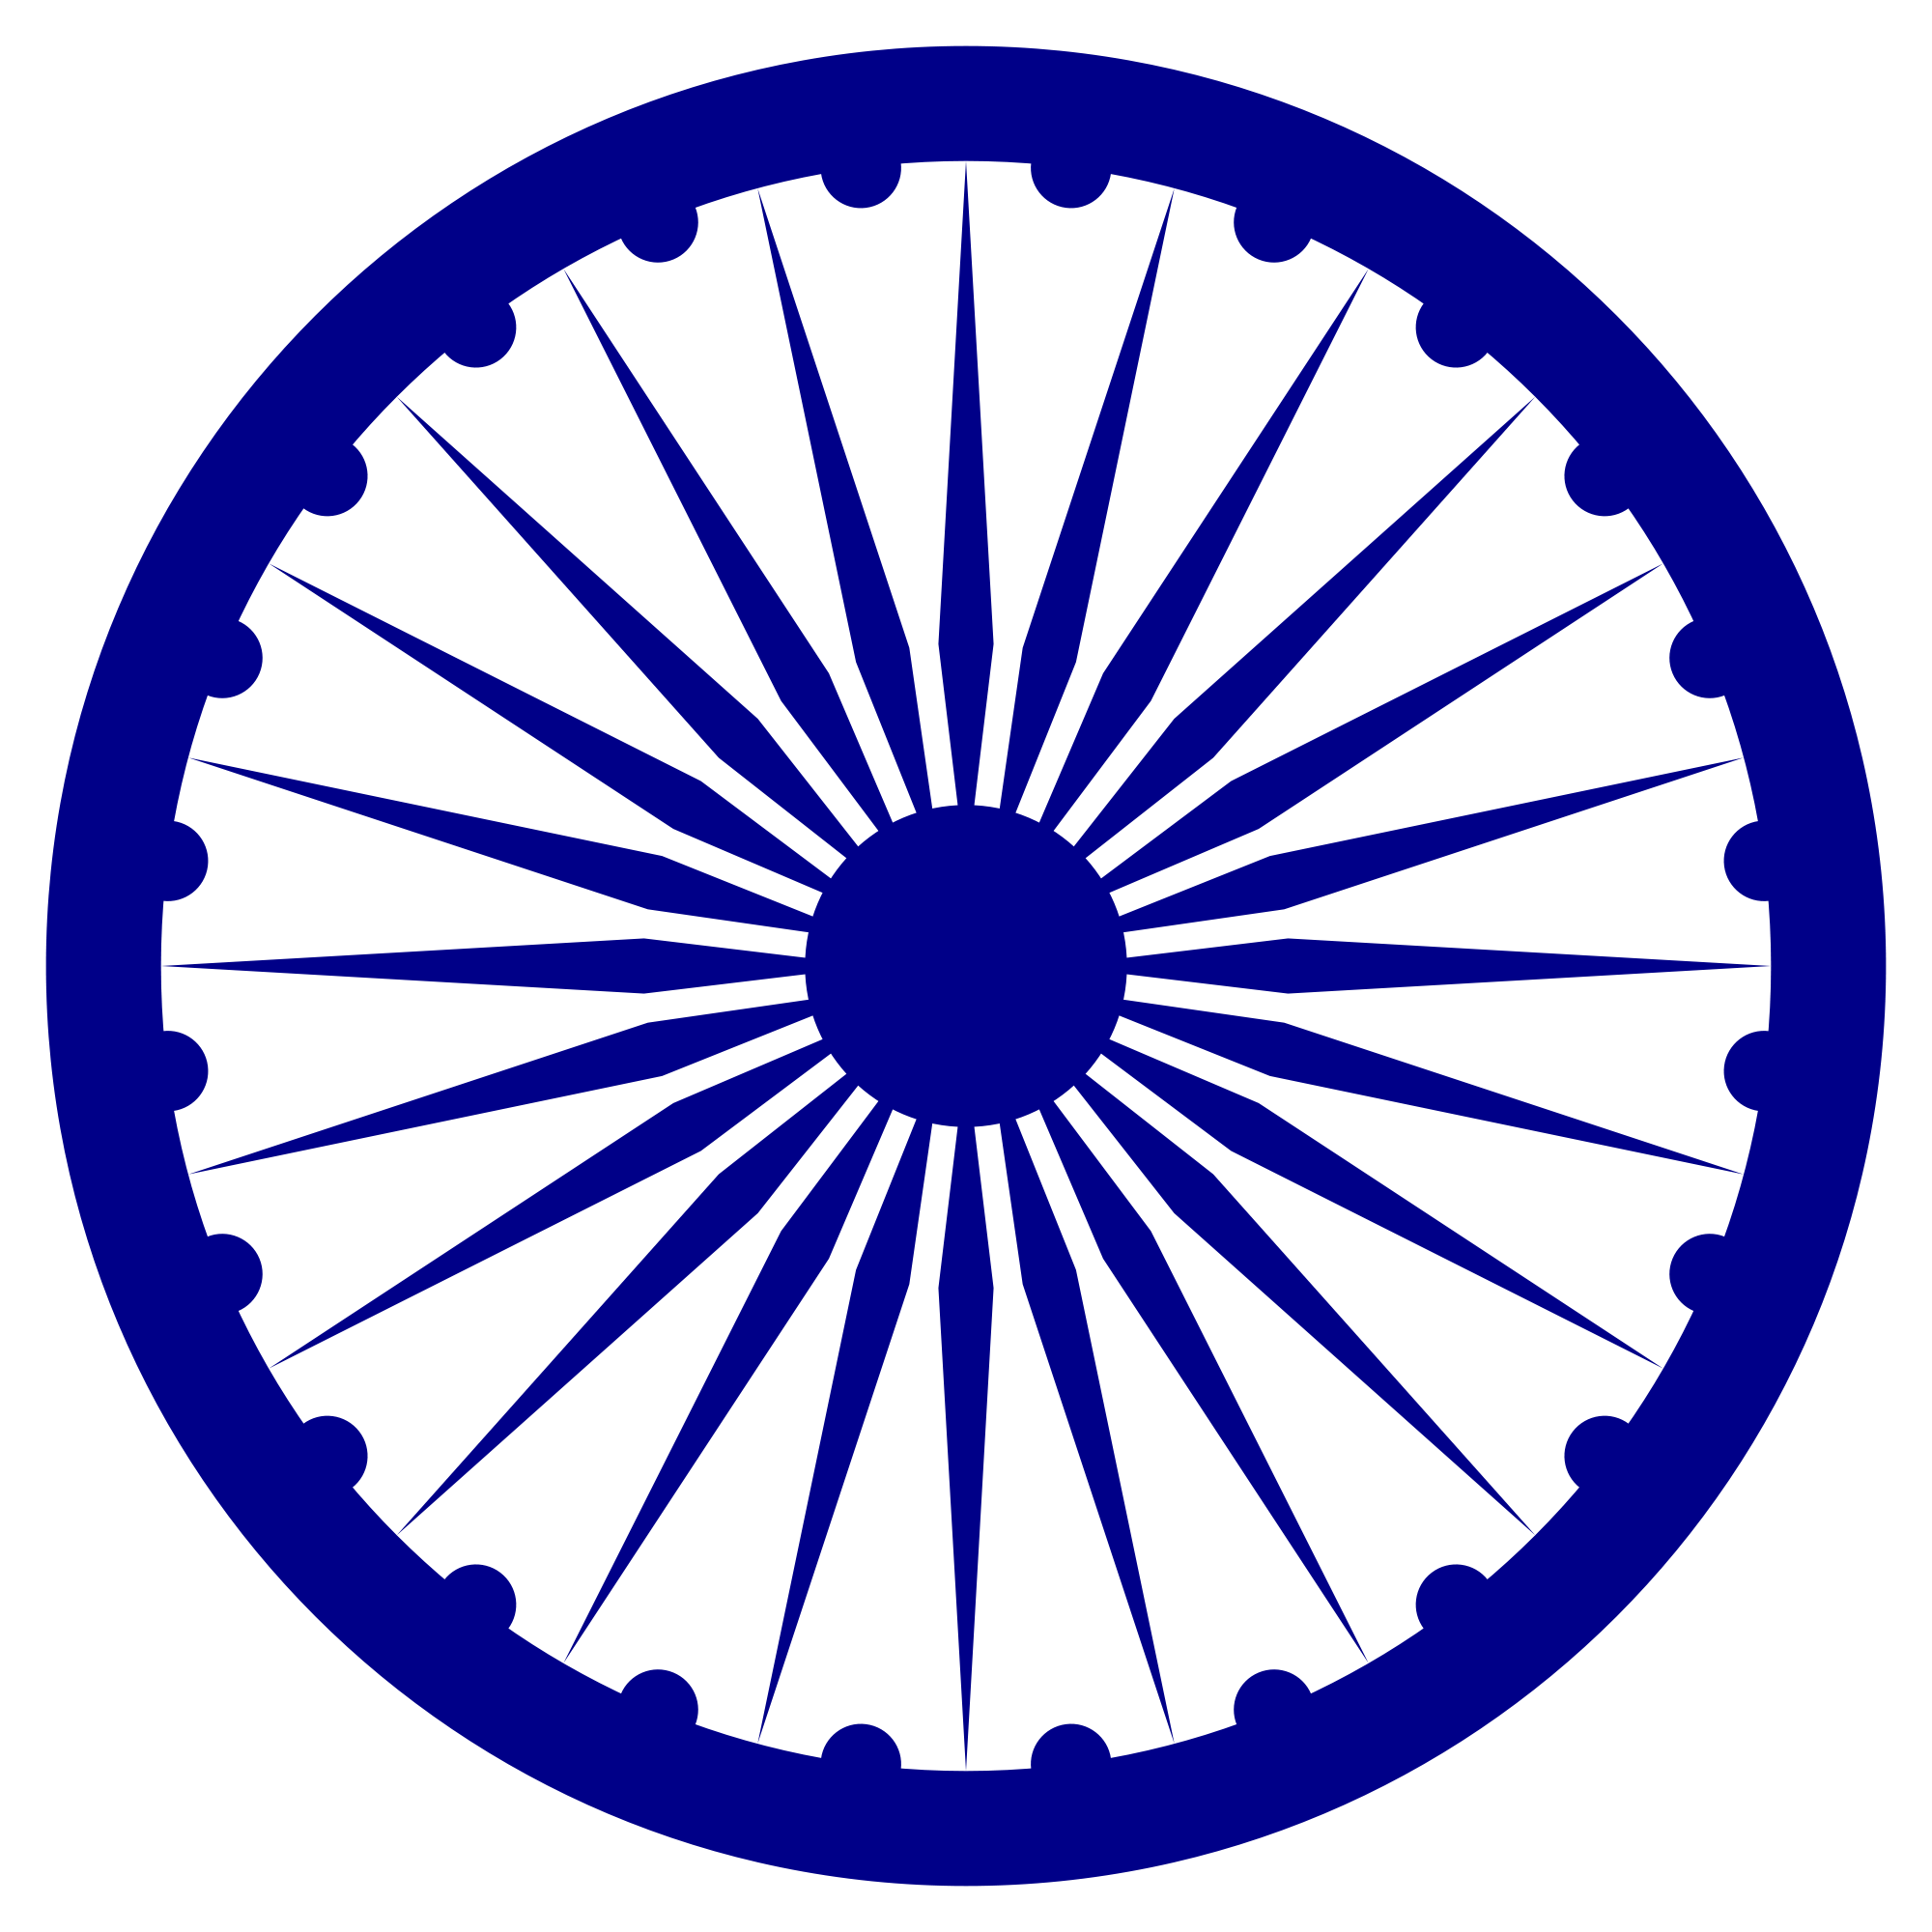 Ashoka Chakra - Wikipedia, the free encyclopedia